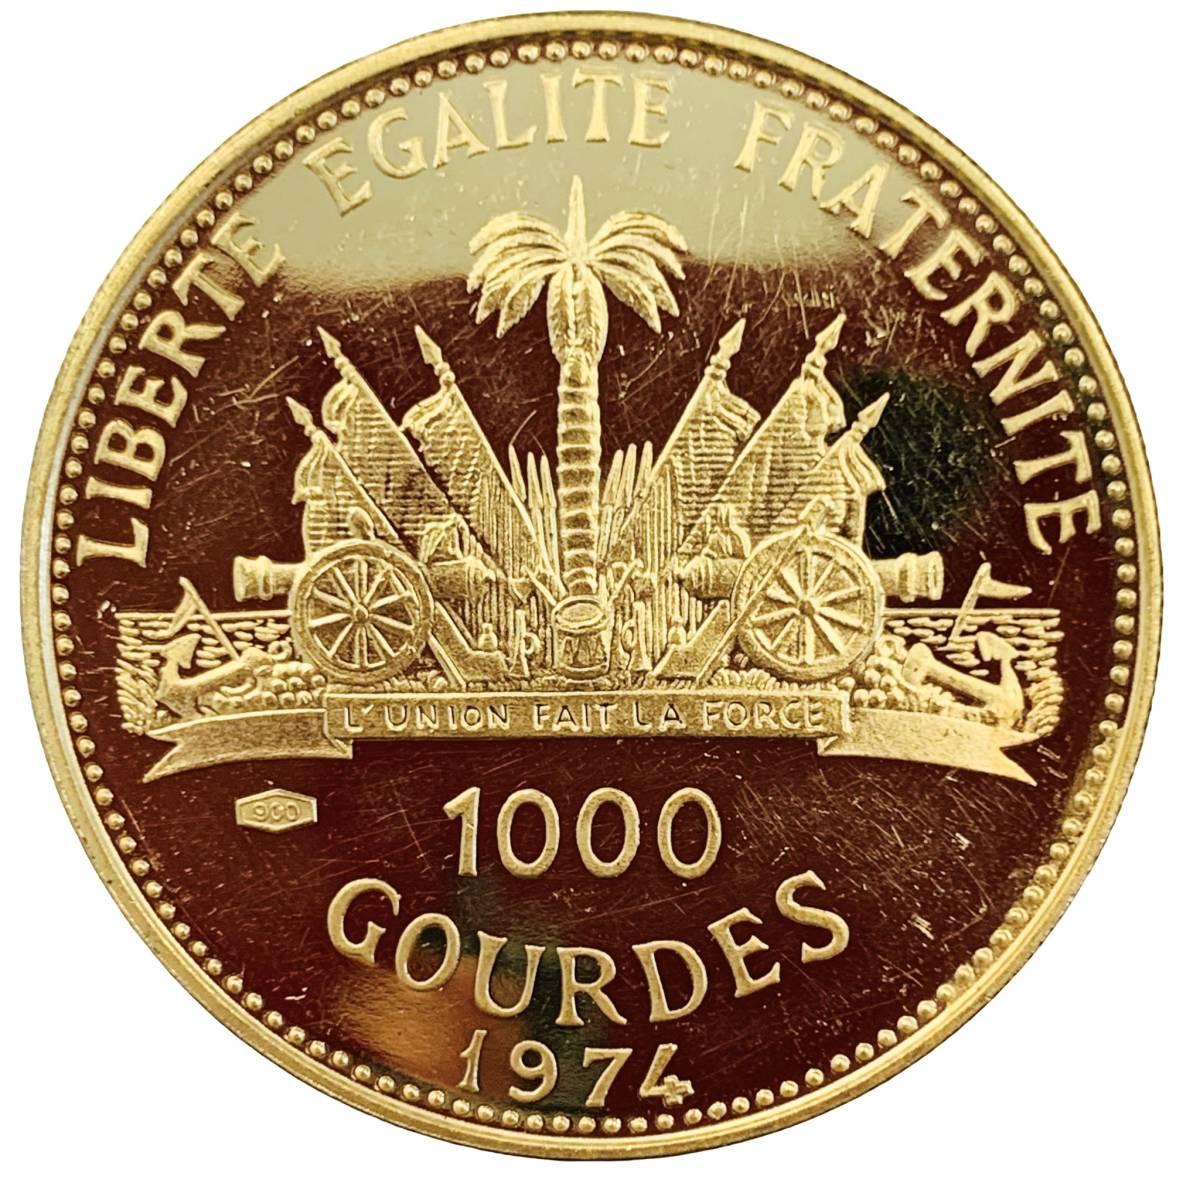 ハイチ共和国 1000グルド金貨 アメリカ建国200年記念 1974年 21.6金 12.9g コイン イエローゴールド コレクション Gold 美品_画像2